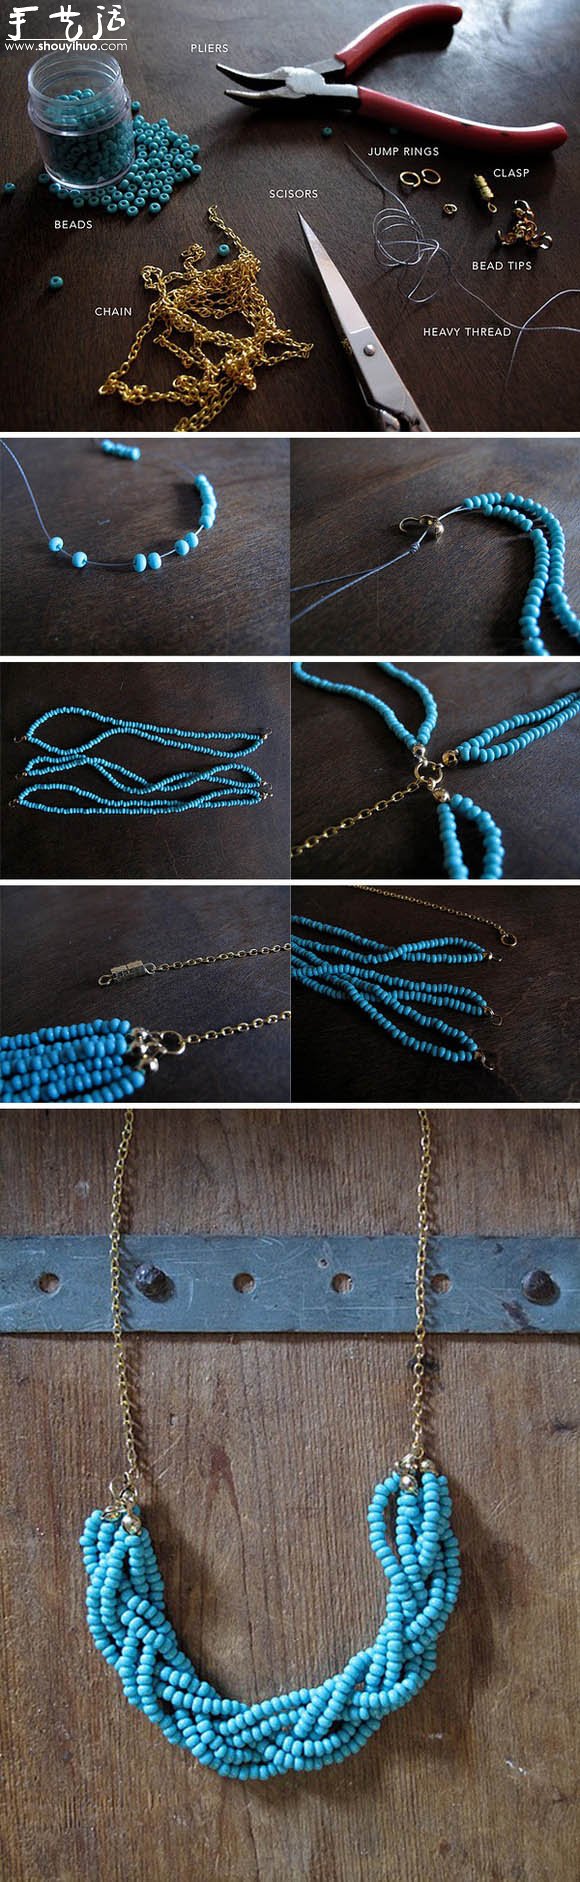 串珠制作漂亮项链挂件的教程